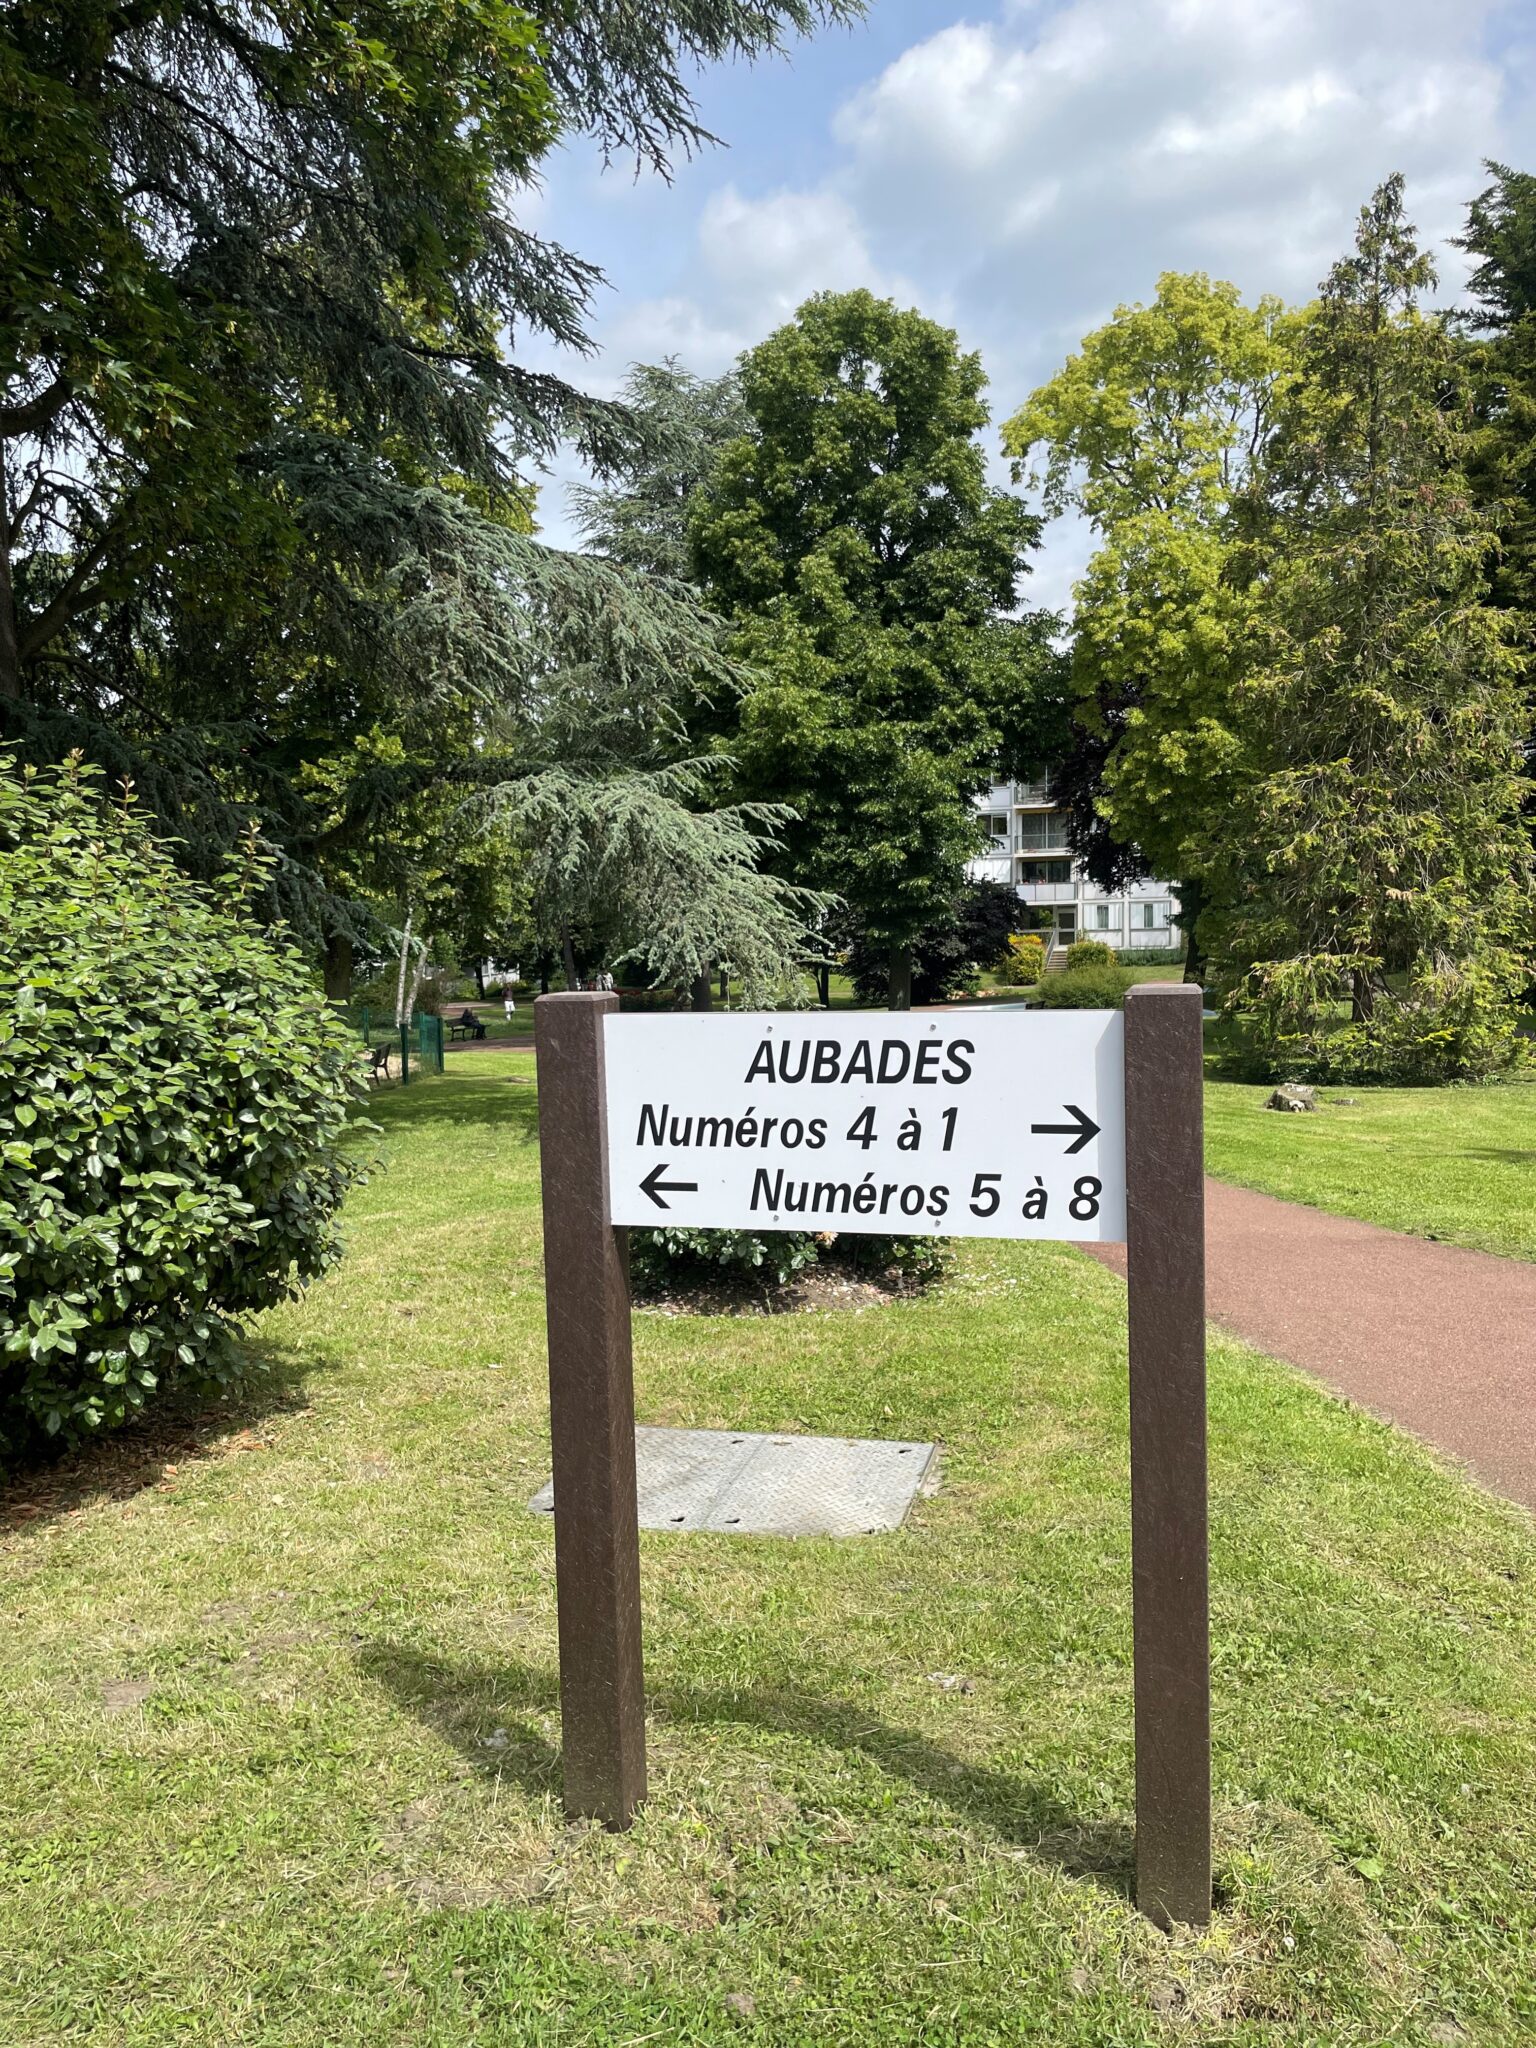 Panneau directionnel "Aubades" en parc verdoyant.